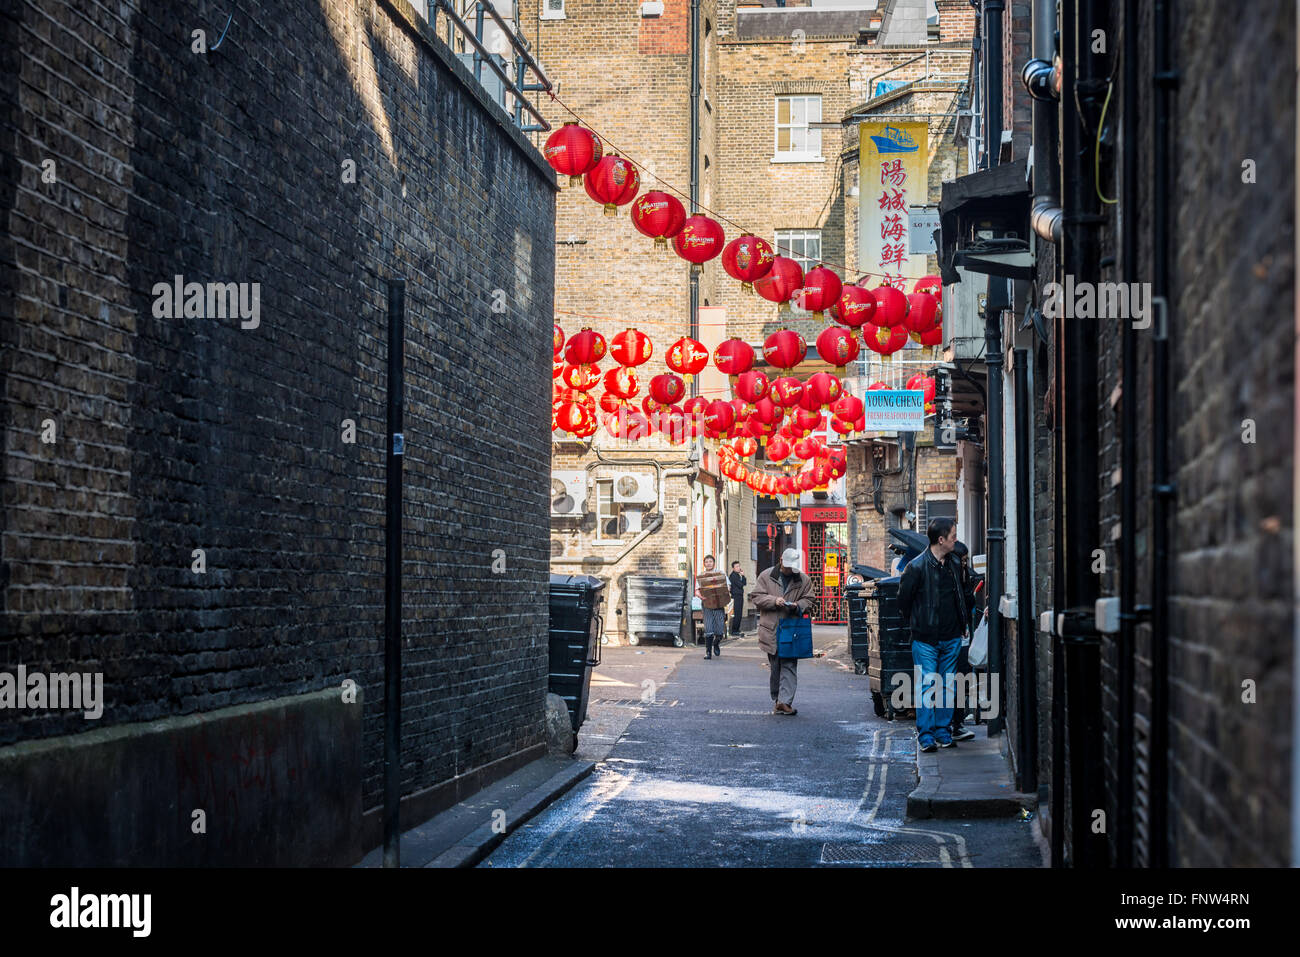 Londres, Royaume-Uni - 13 mars 2016 : London Chinatown est décorée avec des lanternes chinoises rouge traditionnel chinois de NY Banque D'Images